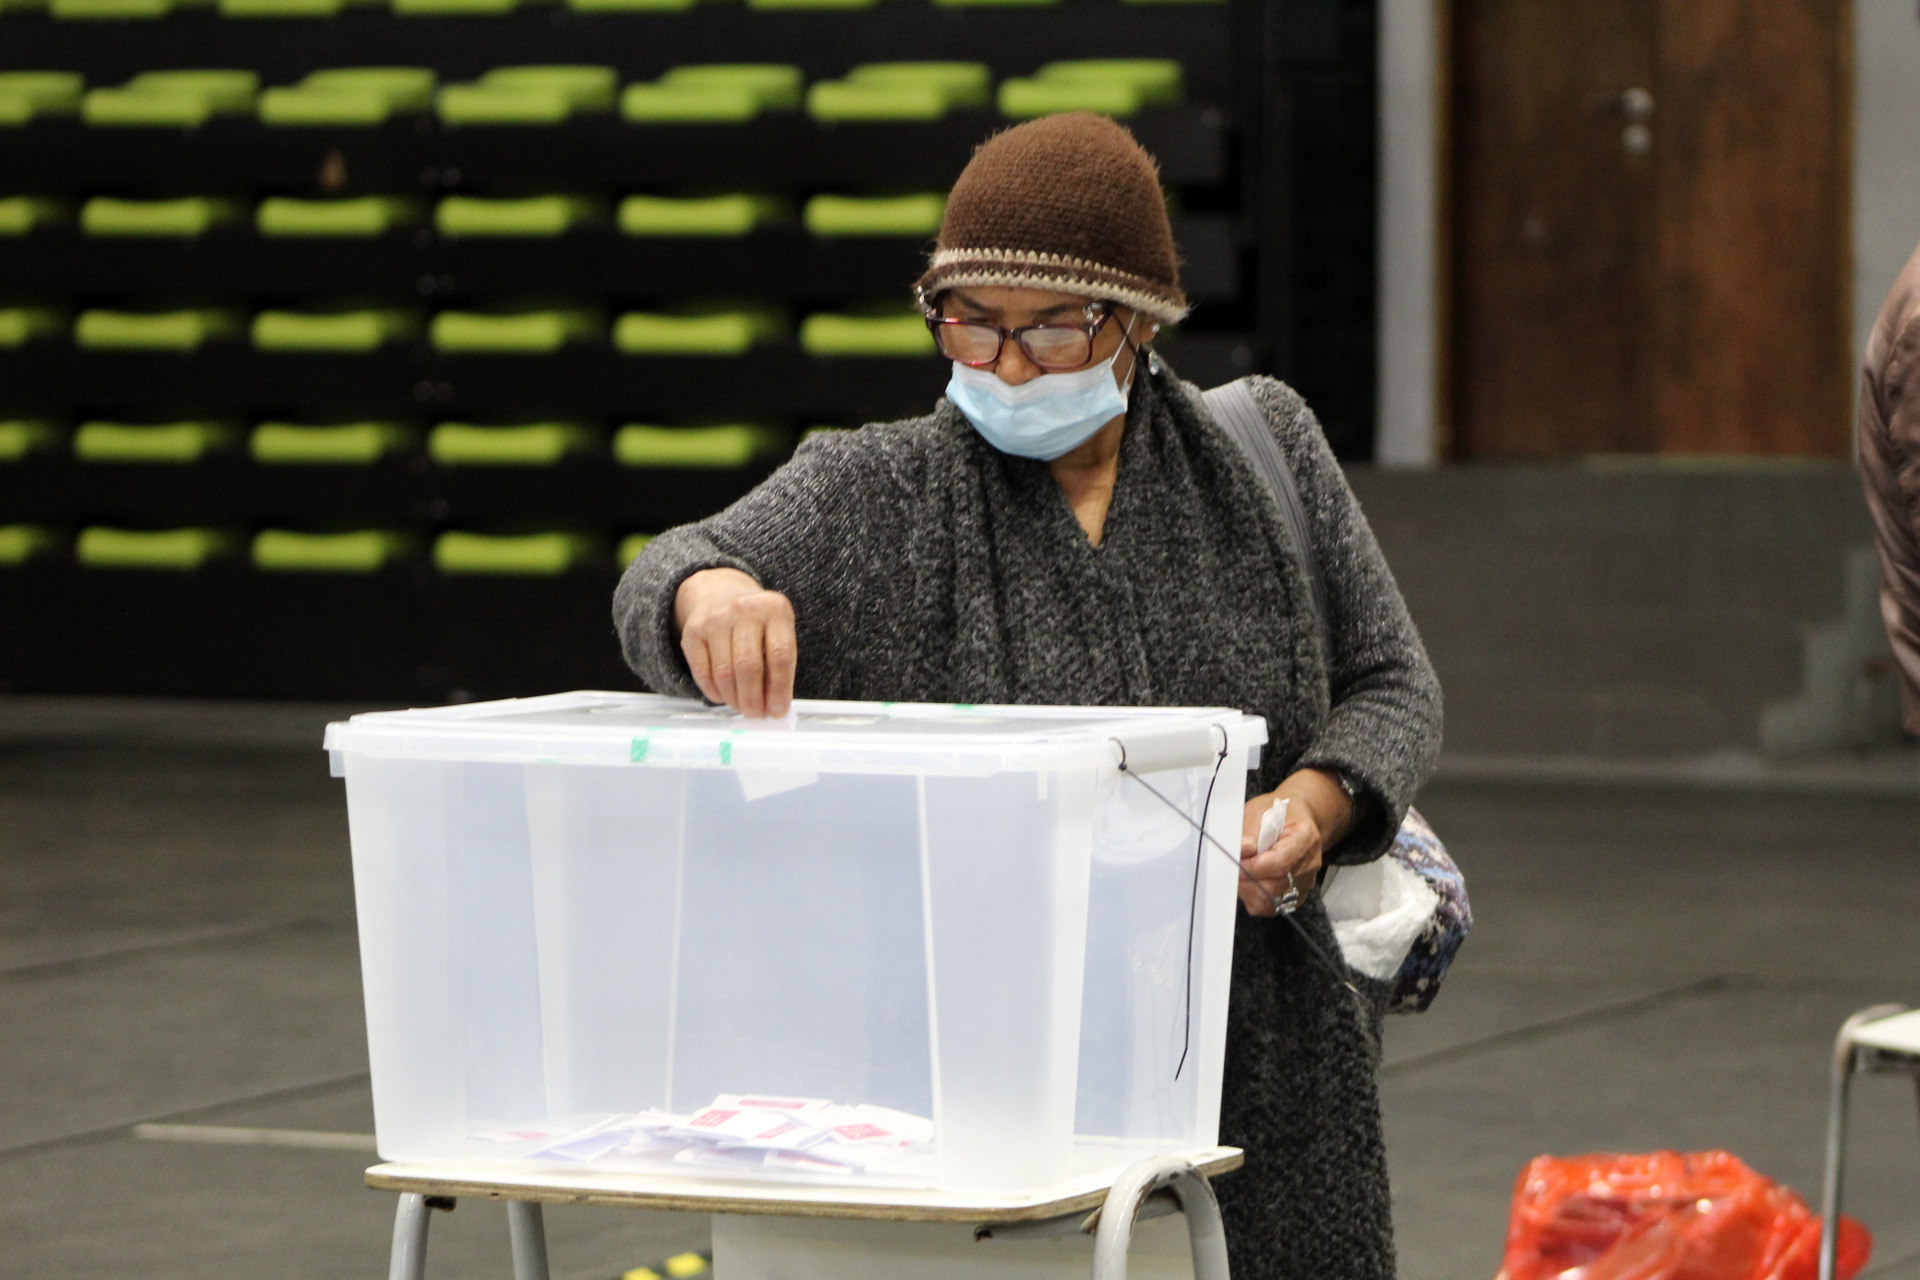 Mujer ingresando su voto en una urna con mascarilla